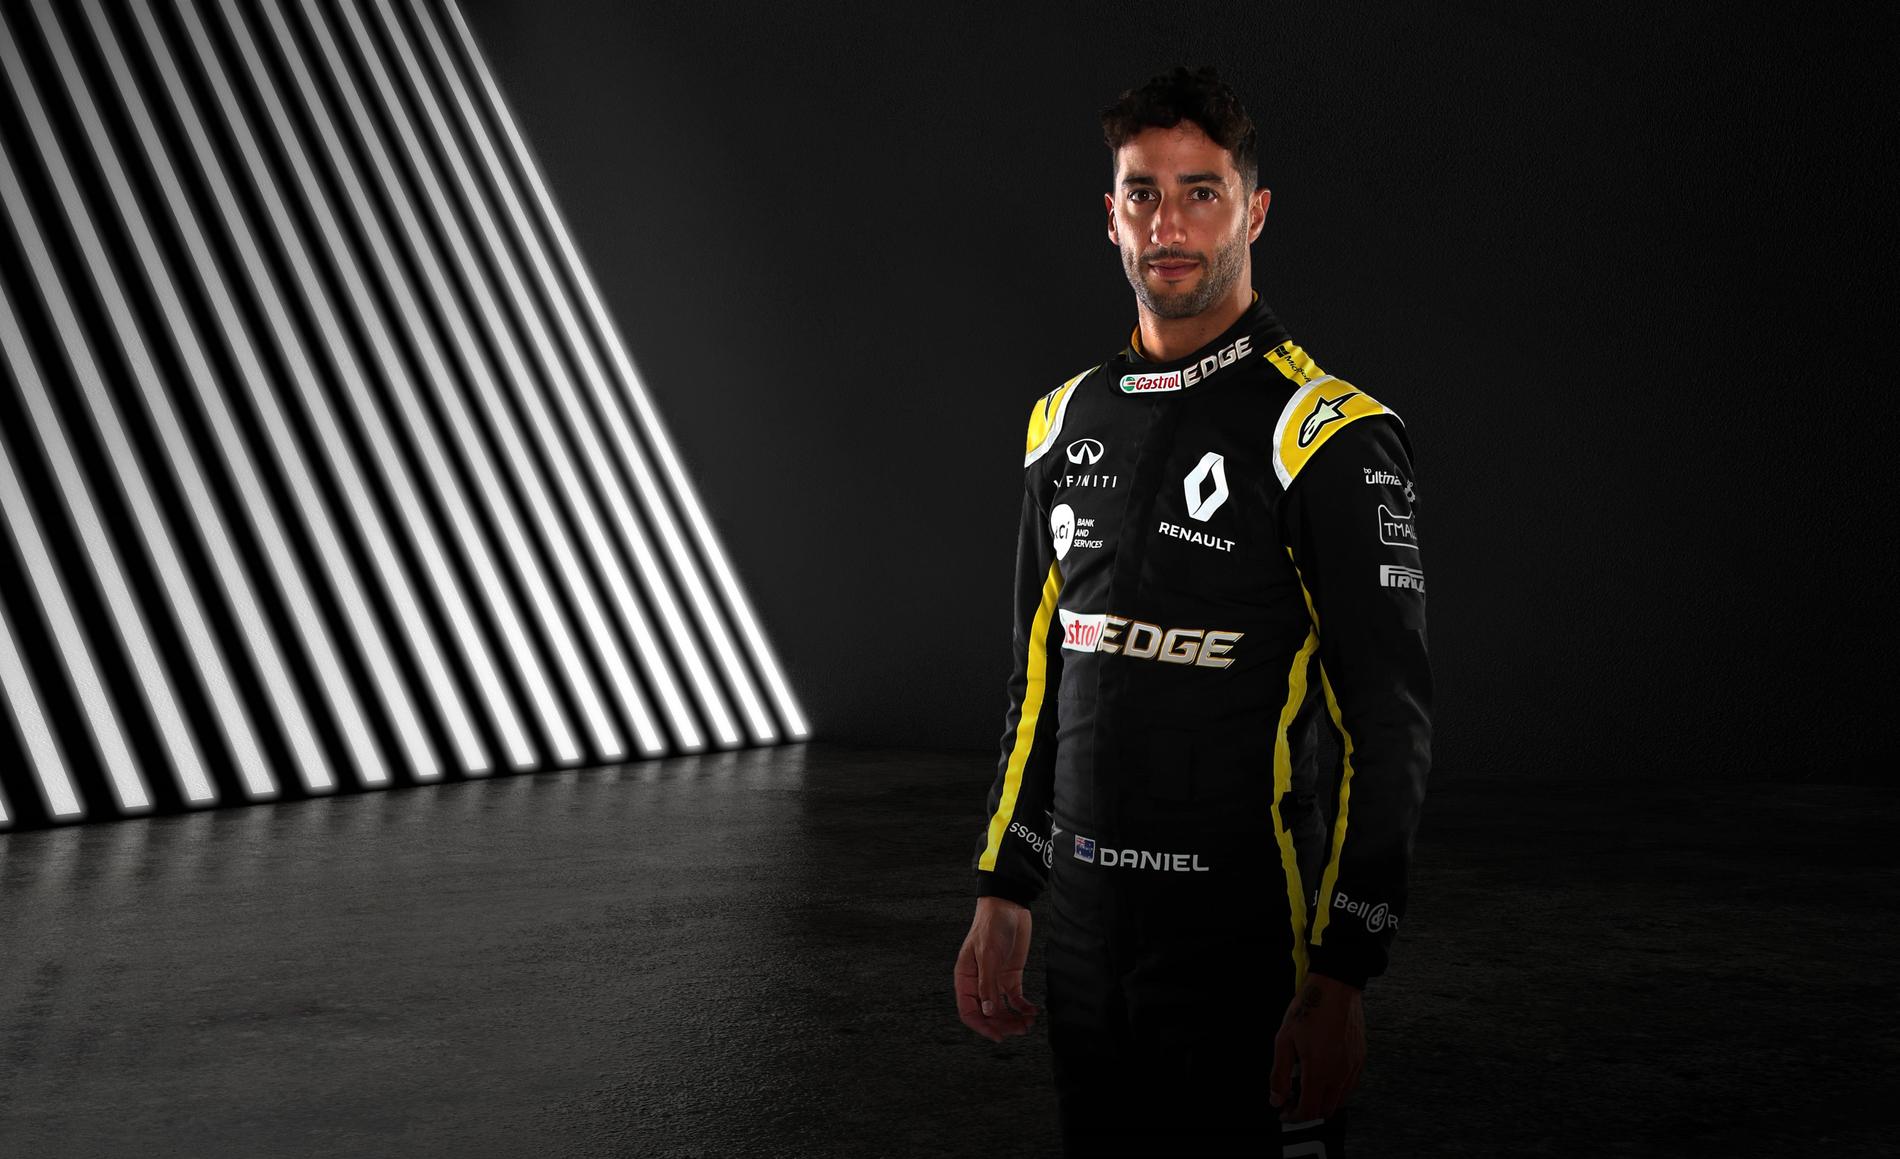 Daniel Ricciardo kör för Renault i F1 2019